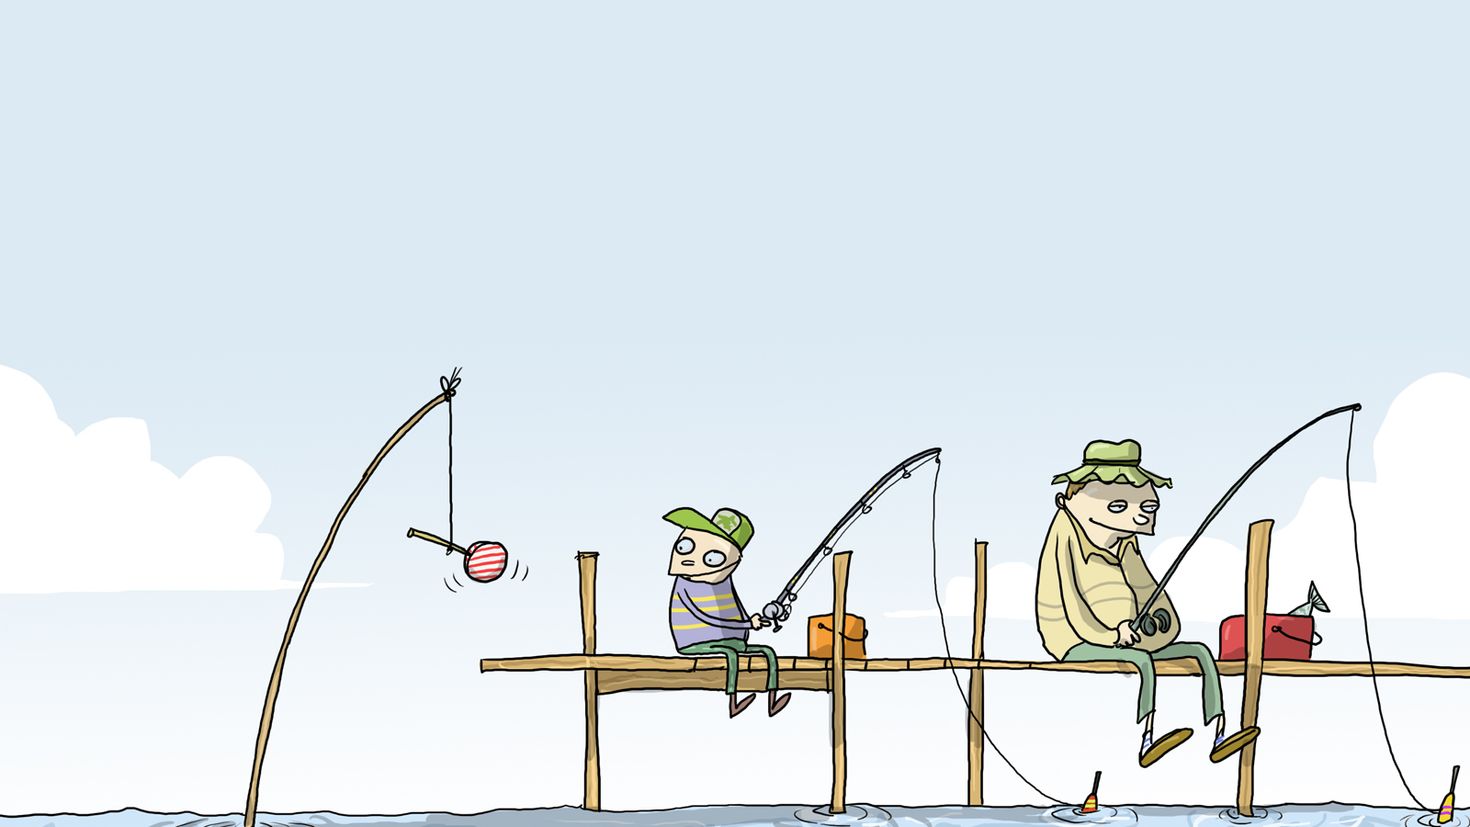 Про рыбалку приколы в картинках